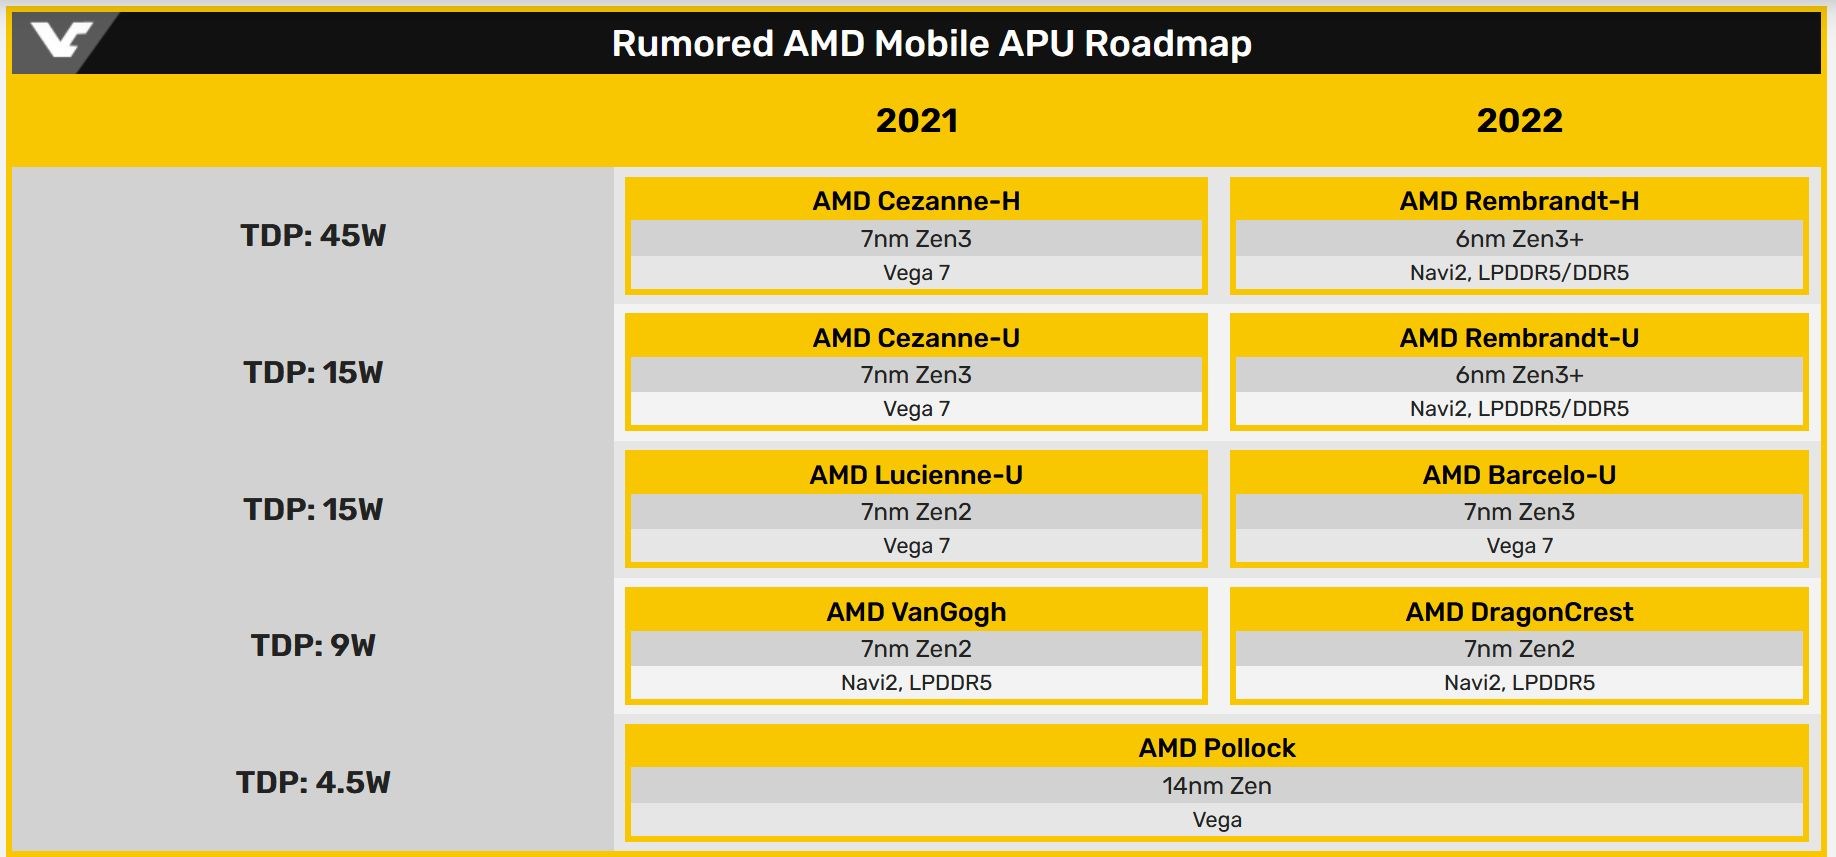 AMD ilk Navi 2 iGPU’lu APU’sunu önümüzdeki yıl duyurabilir